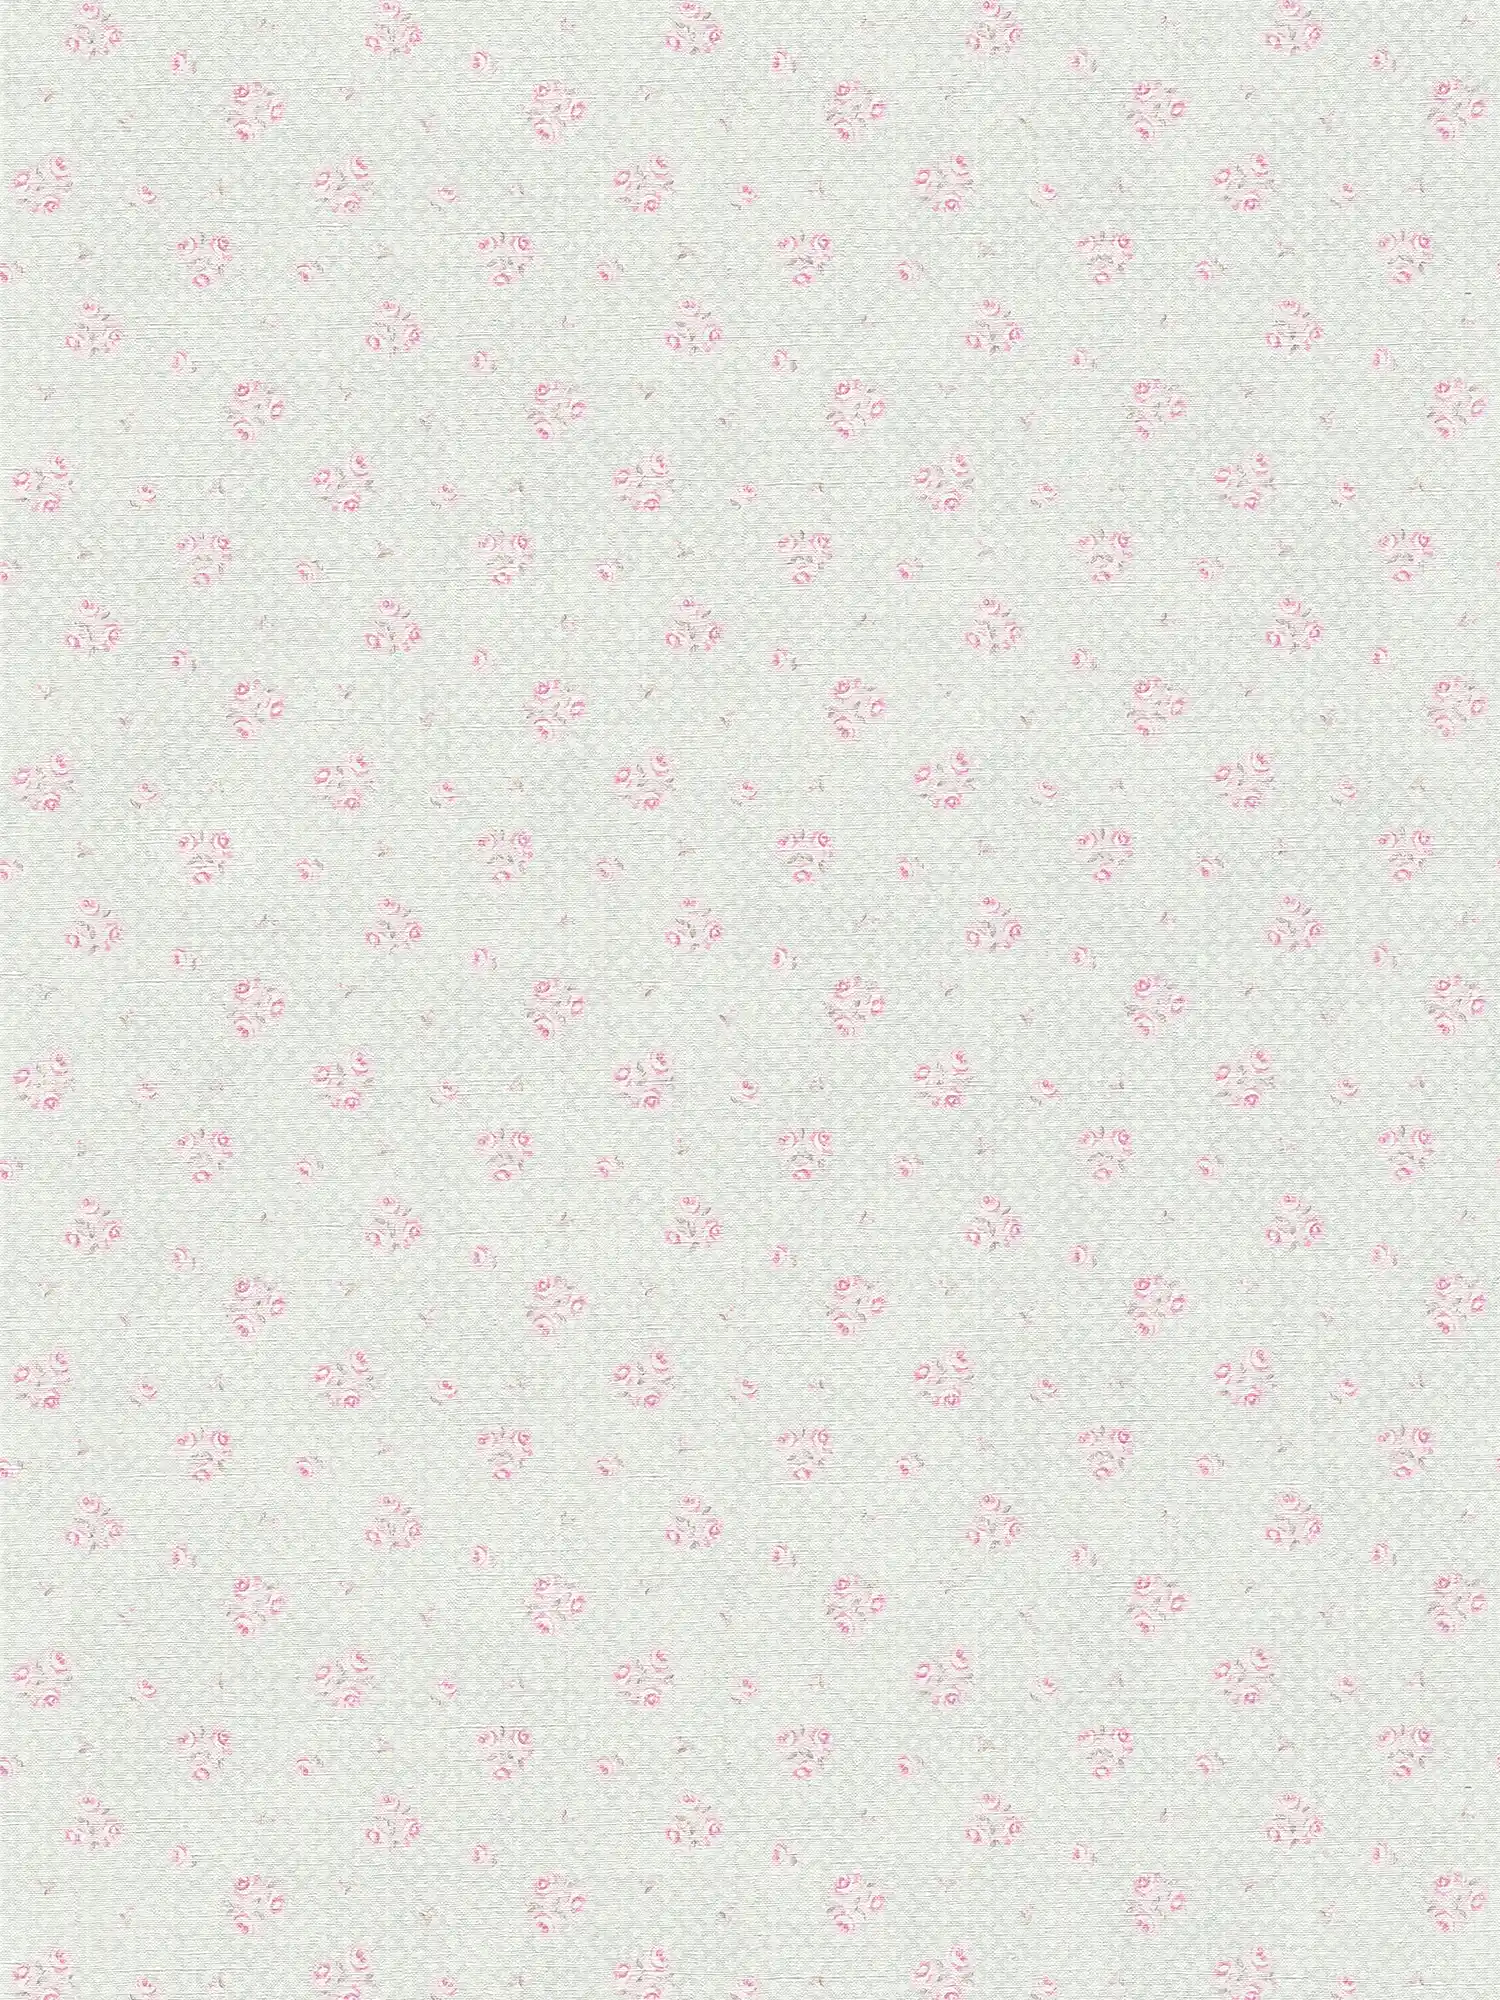 Papier peint intissé à motif floral style shabby chic - gris, rose, blanc
